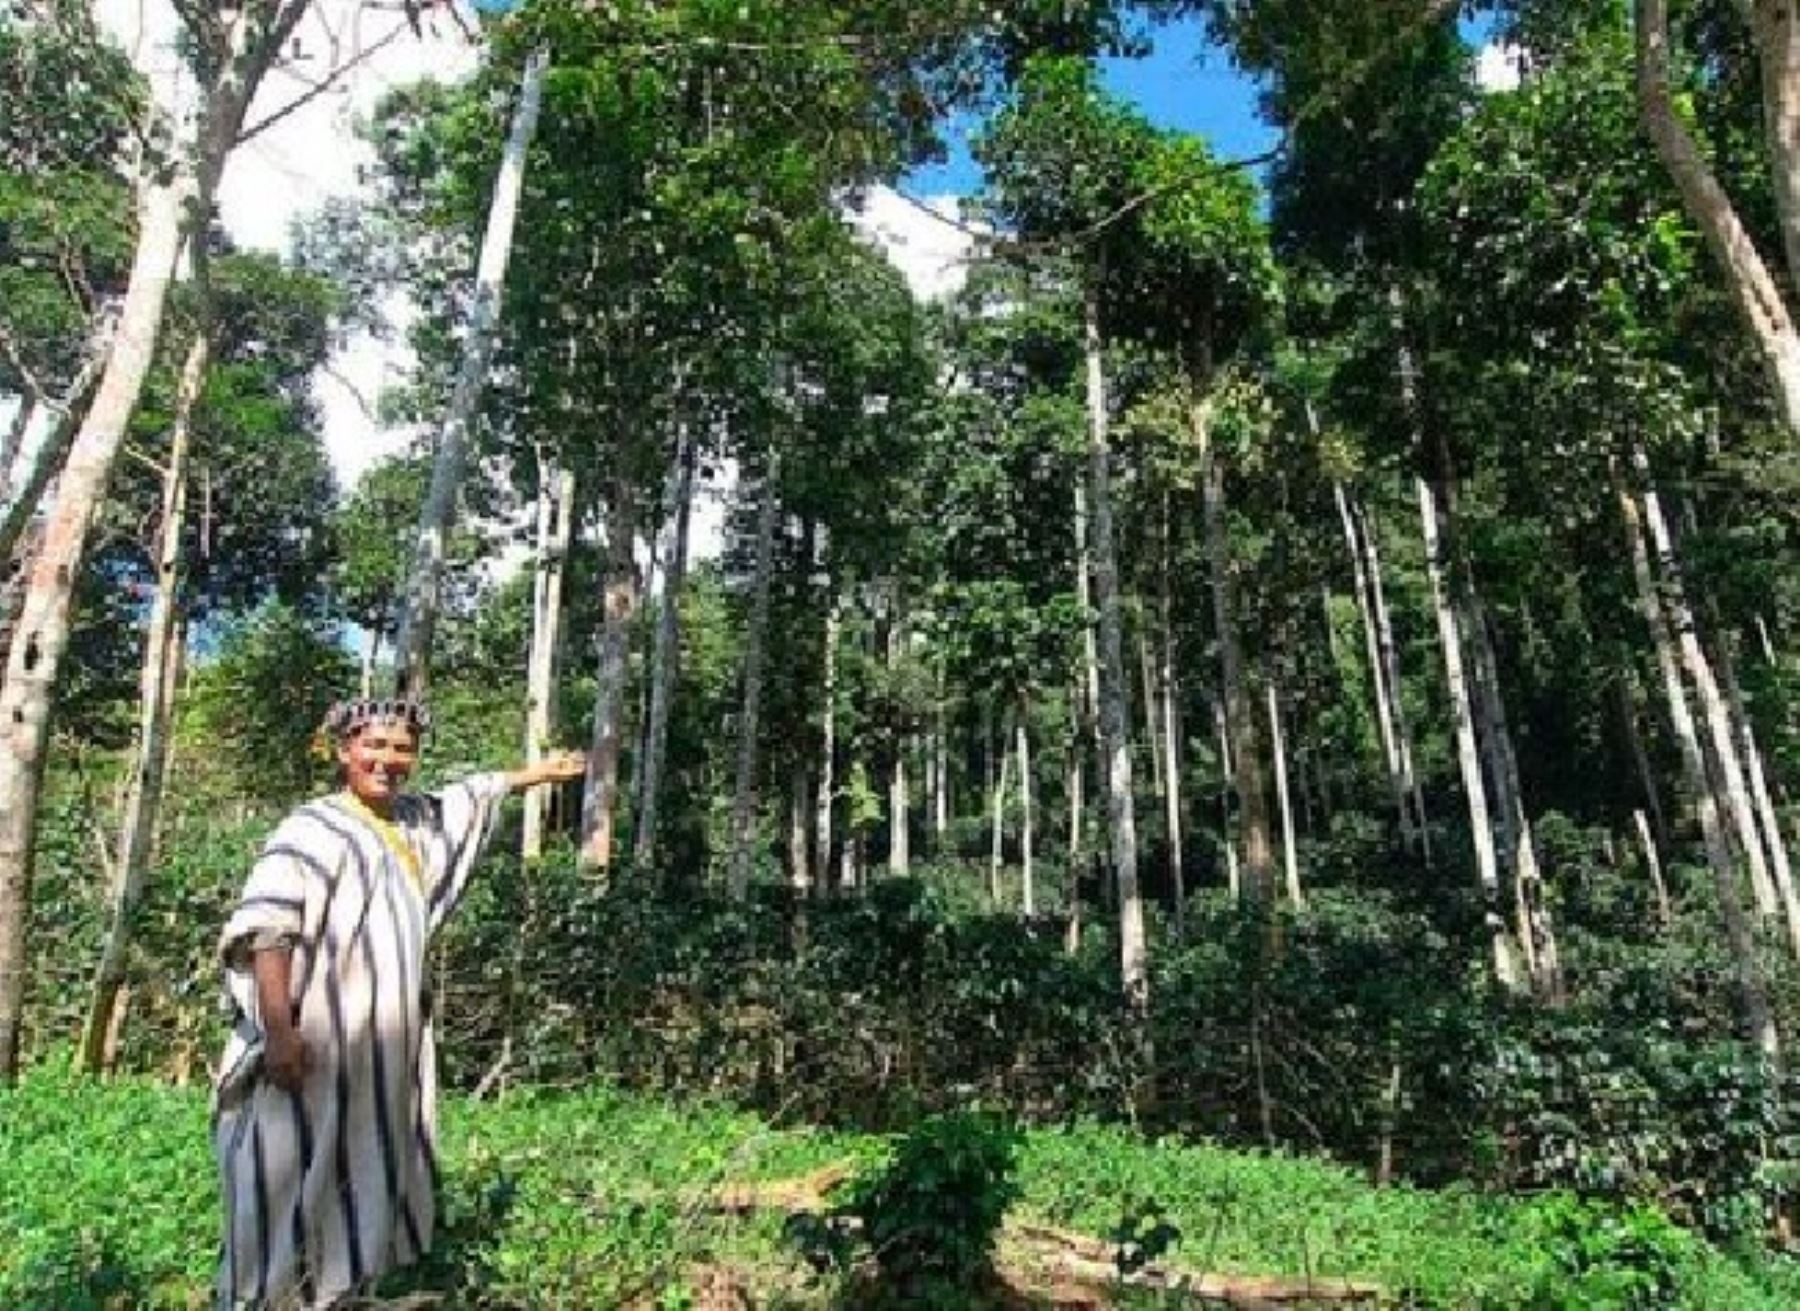 El Ministerio del Ambiente lanzará mañana la campaña "Viva el bosque", que busca sensibilizar a la ciudadanía sobre el valor de dicho ecosistema y la importancia ambiental, social y económica de su conservación. ANDINA/Difusión